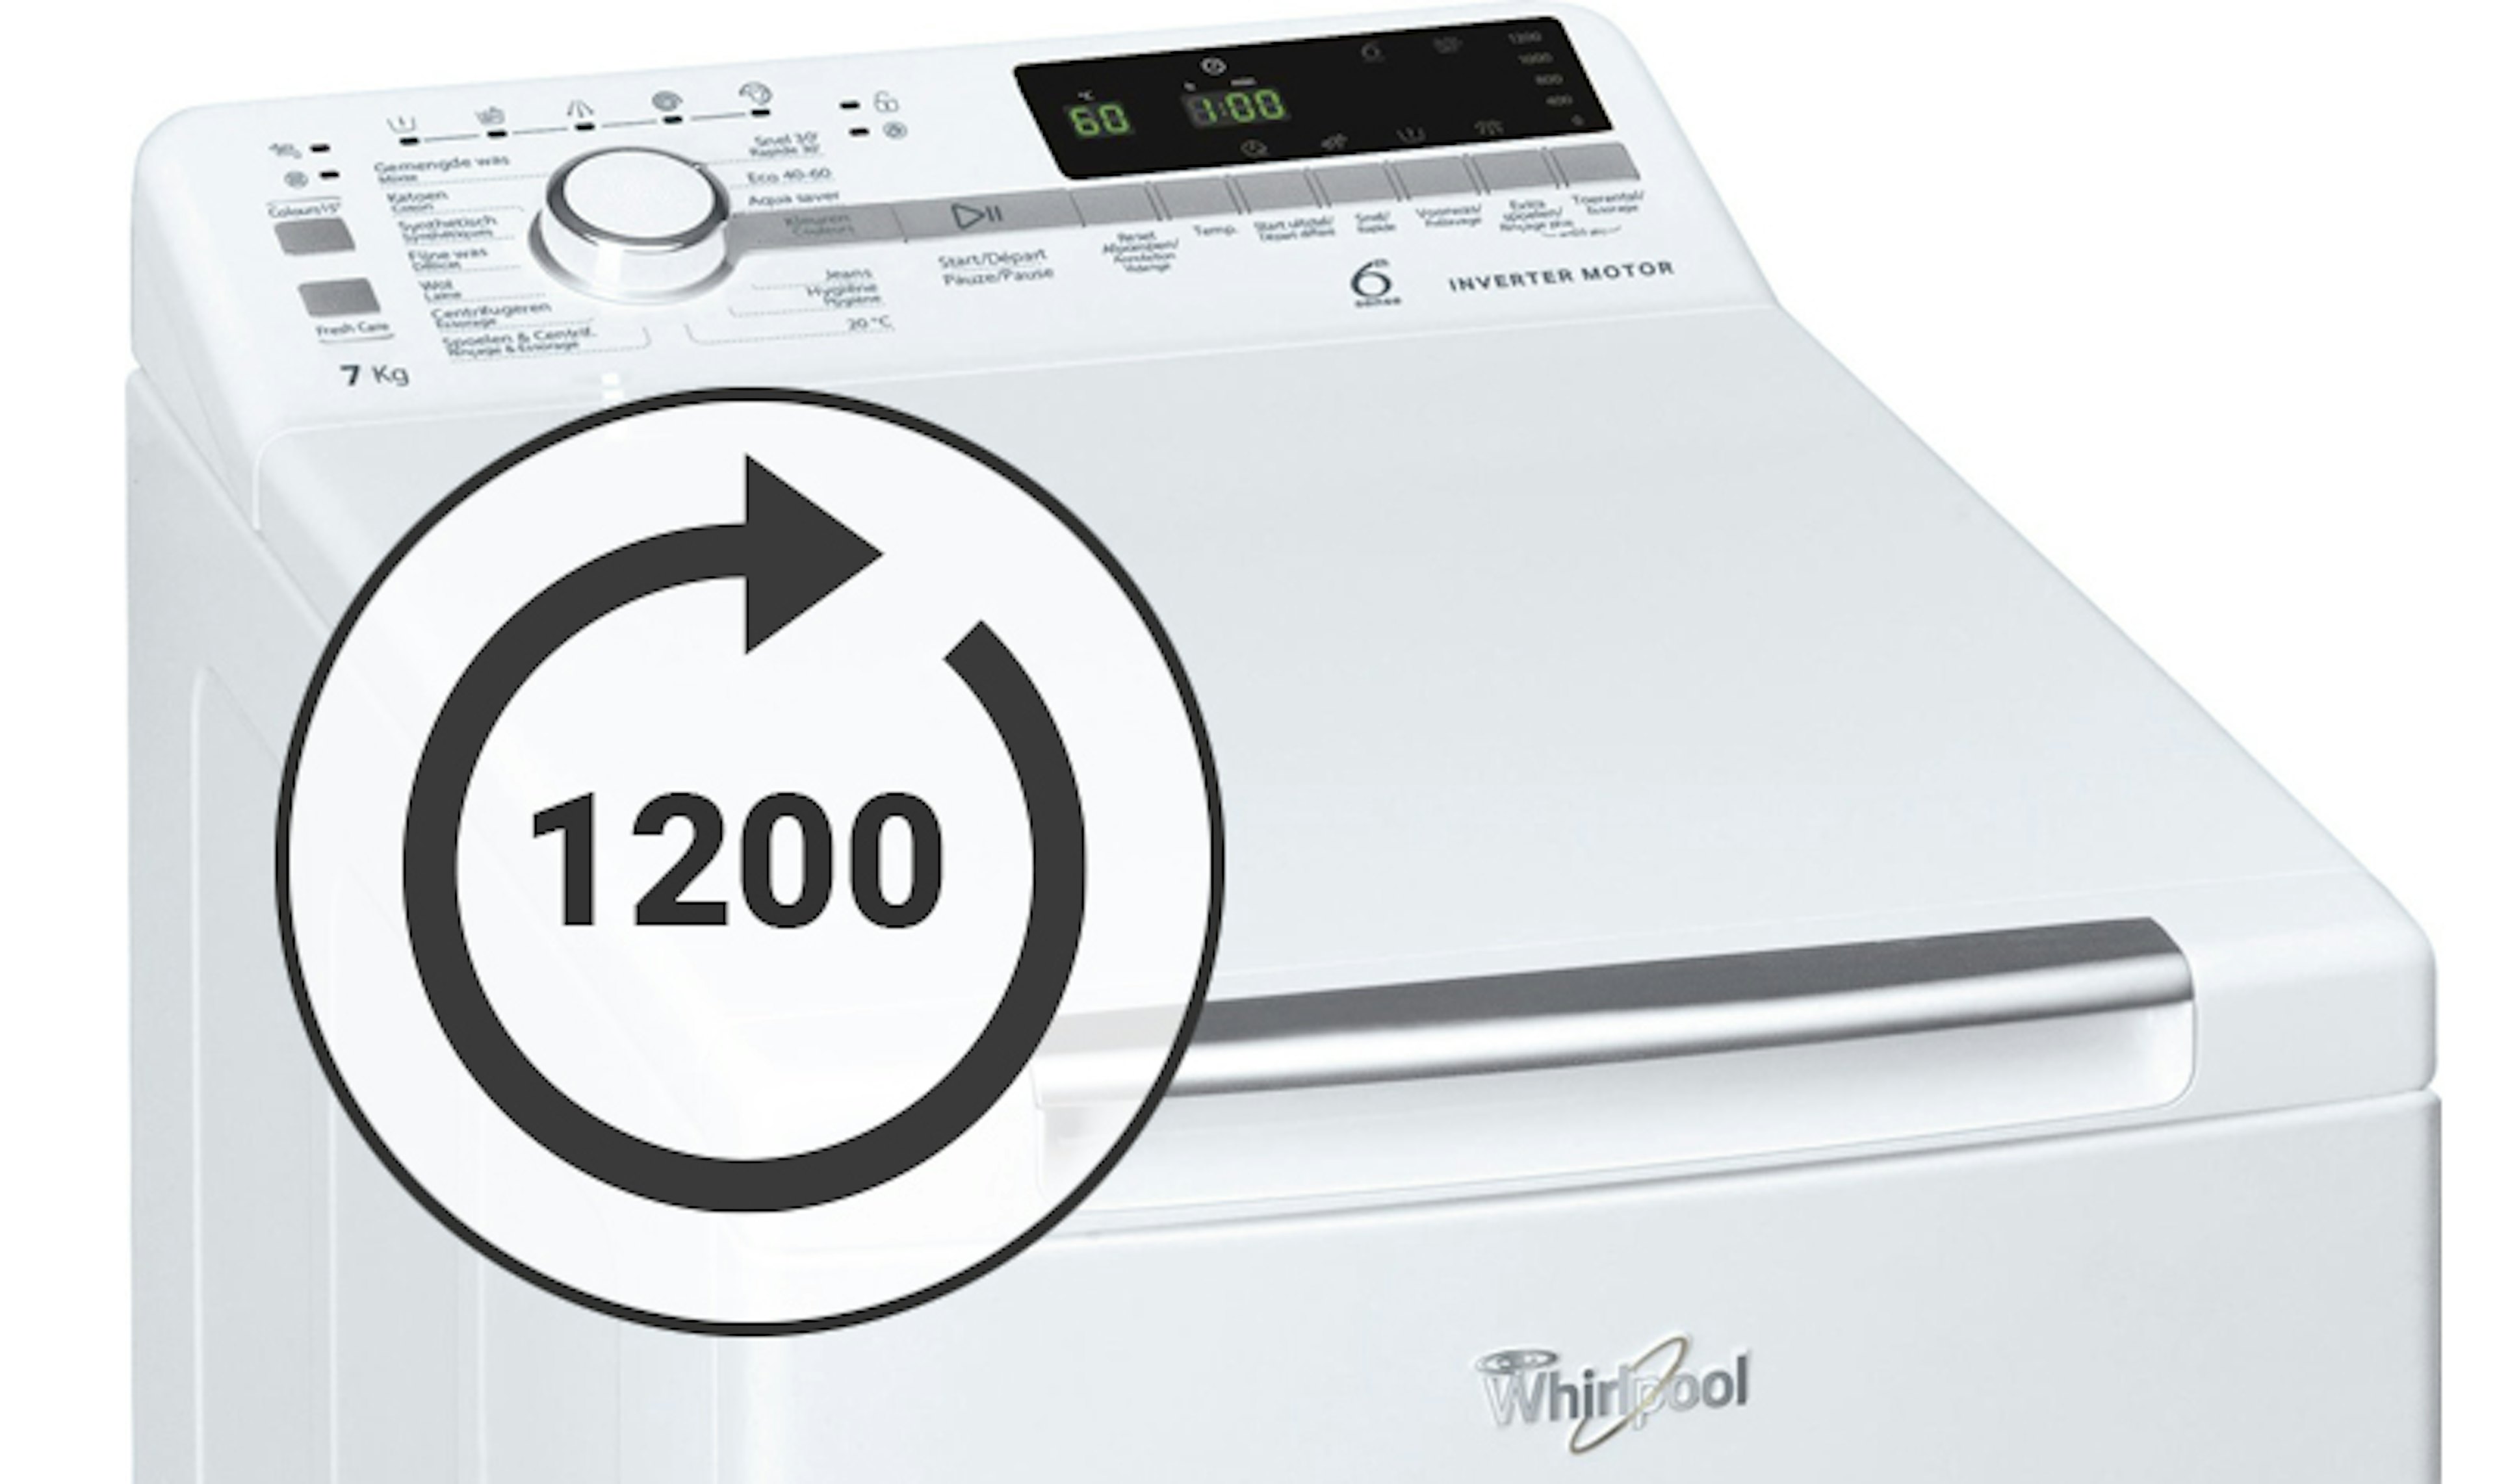 Whirpool bovenlader wasmachine 1200 toeren